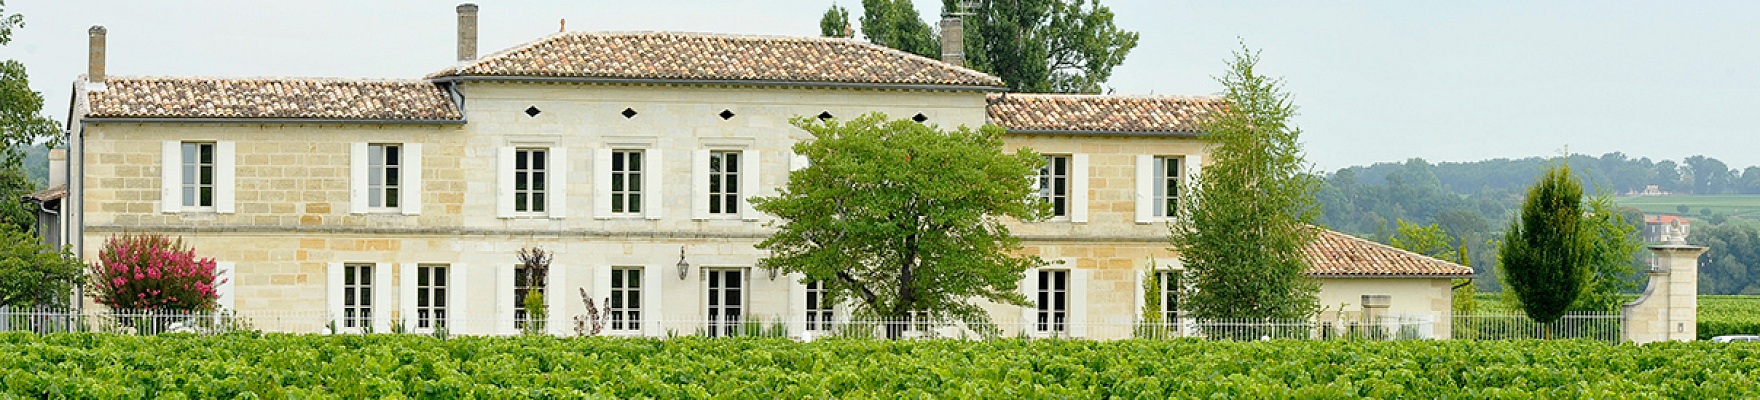 Château Corbin Despagne